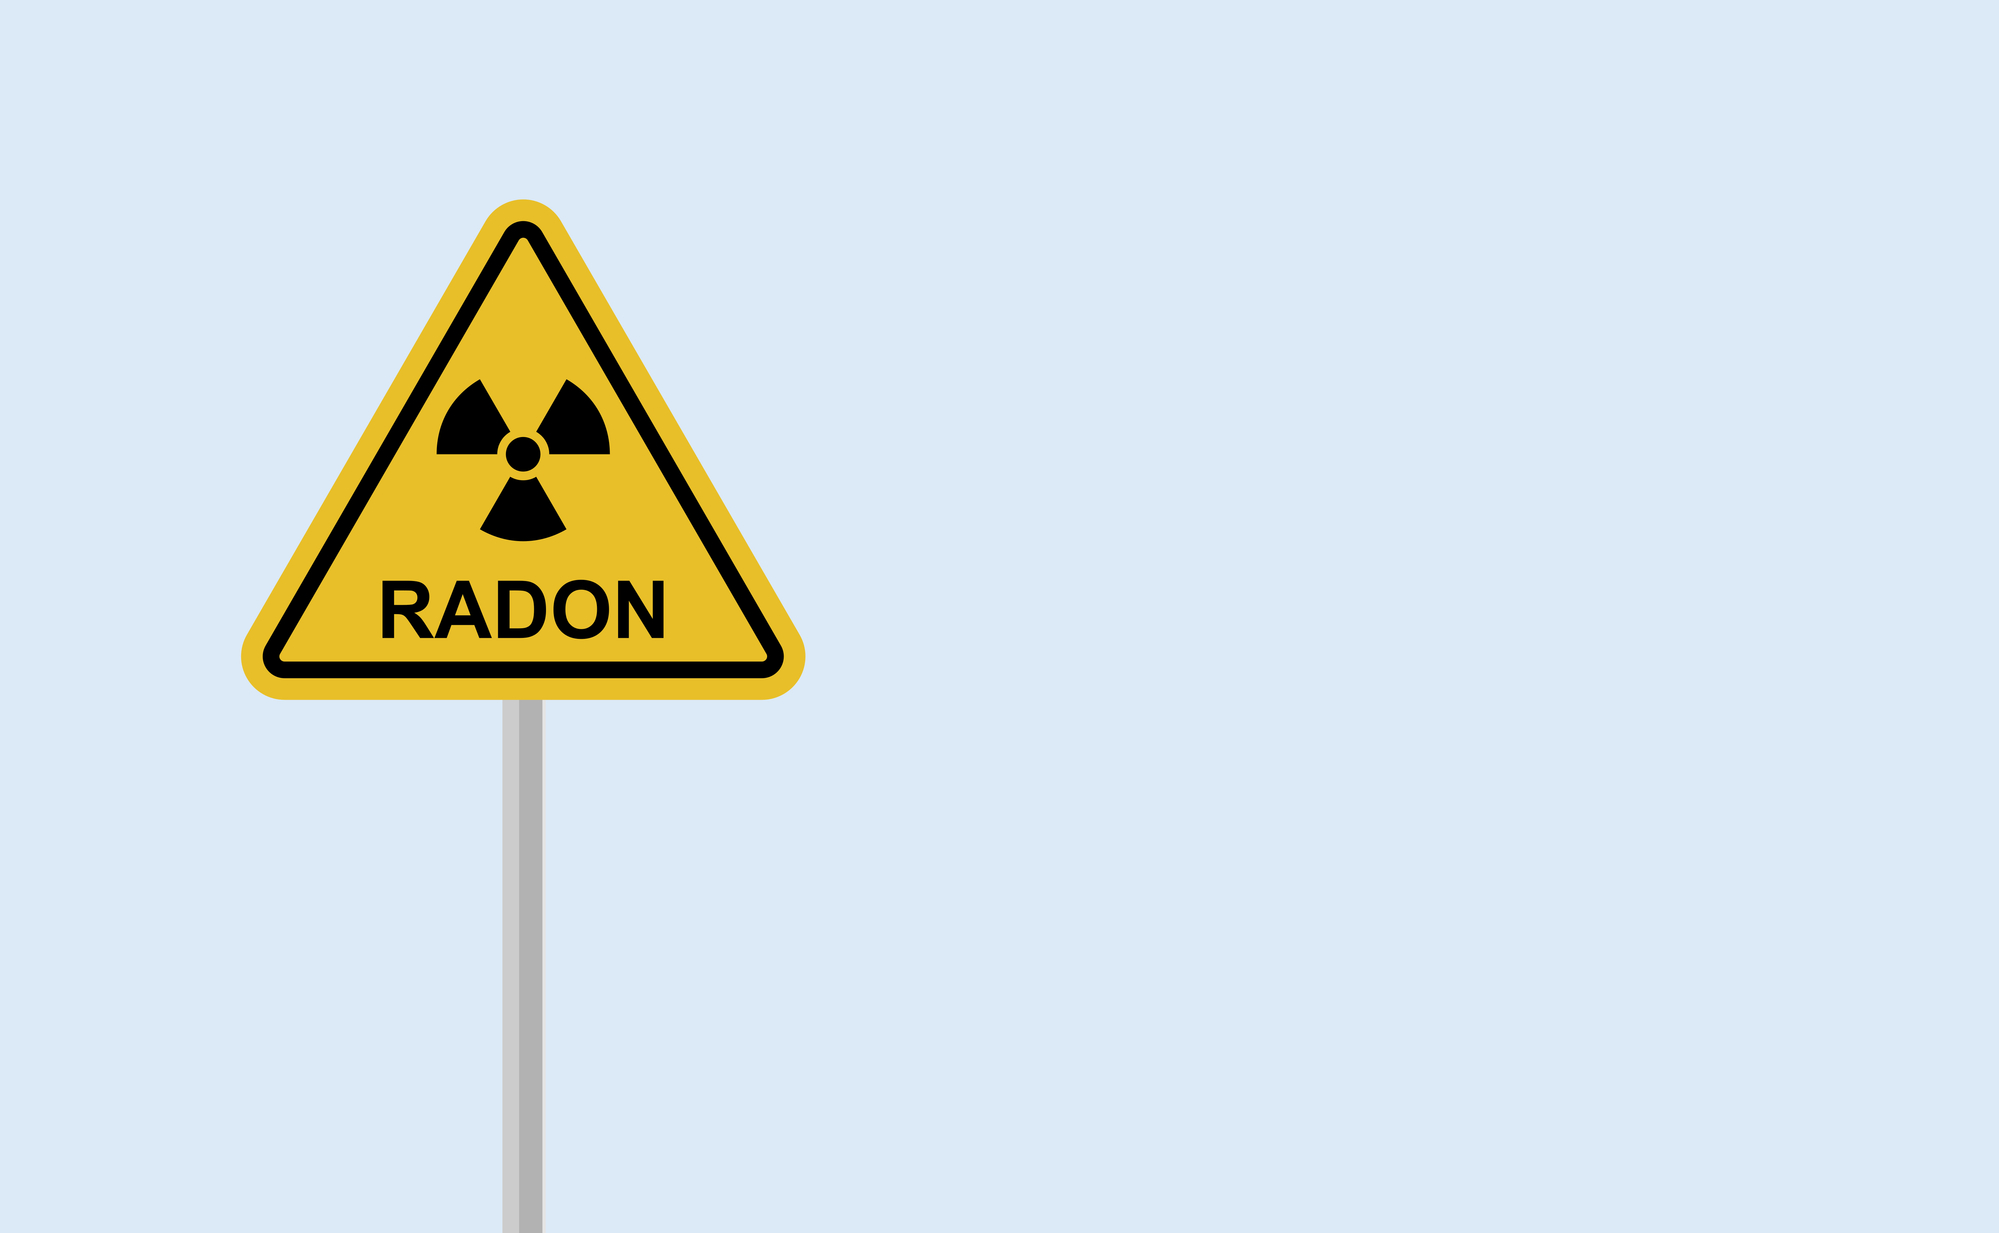 radon